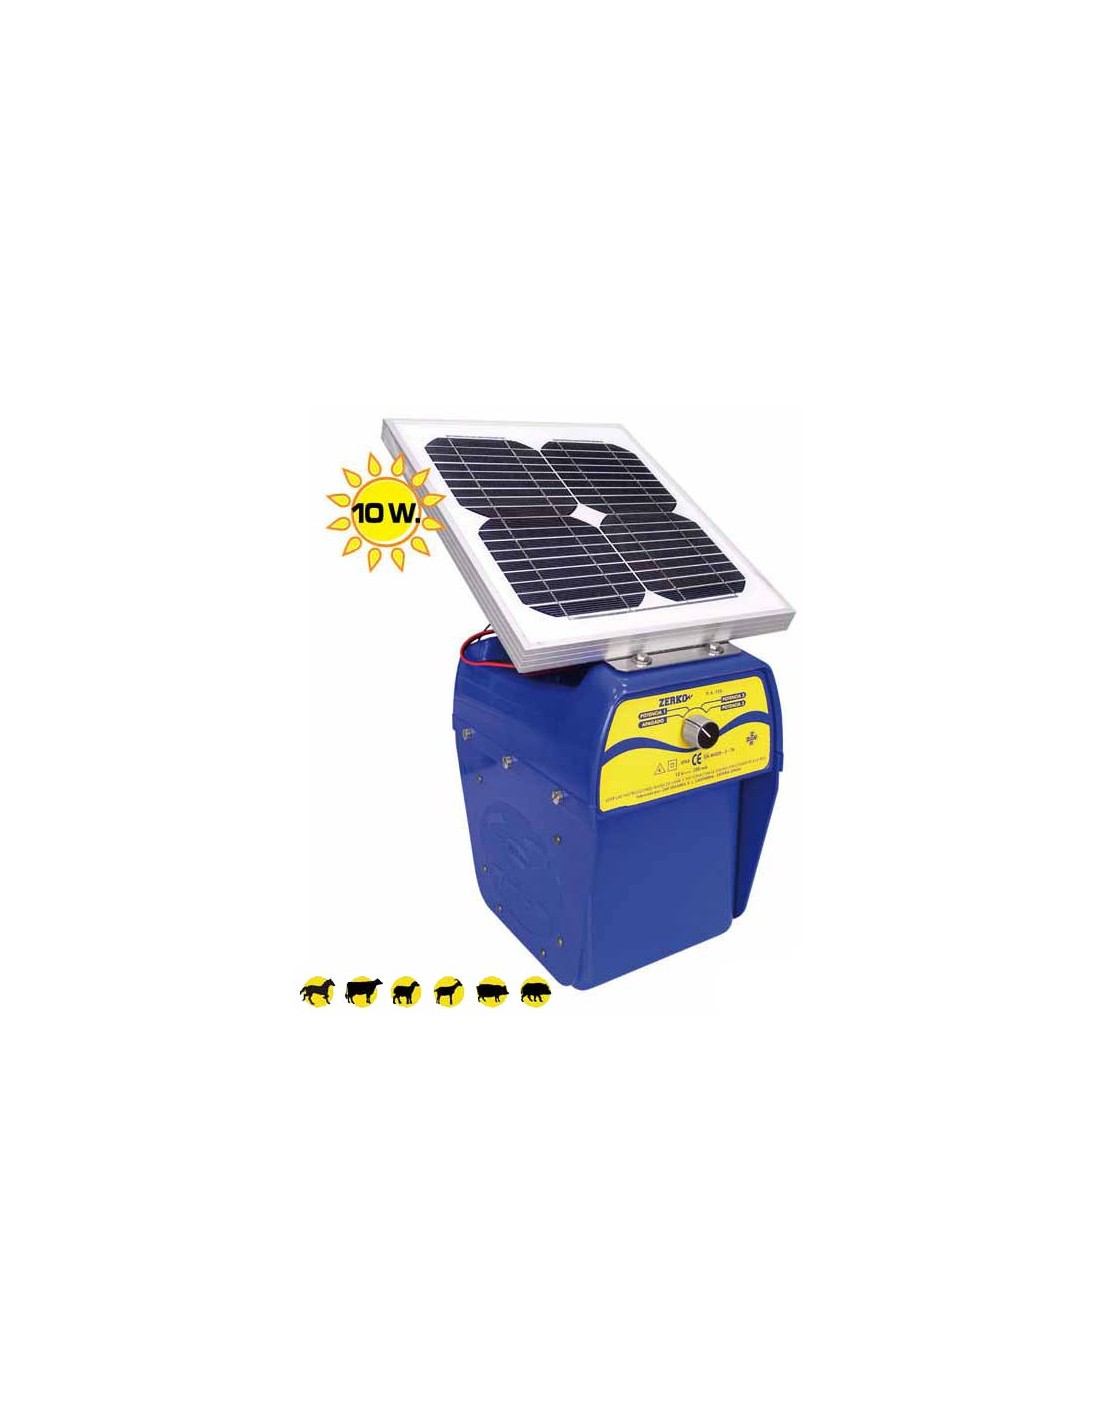 Pastor electrico Zerko-solar (sin bateria) - Agrocor